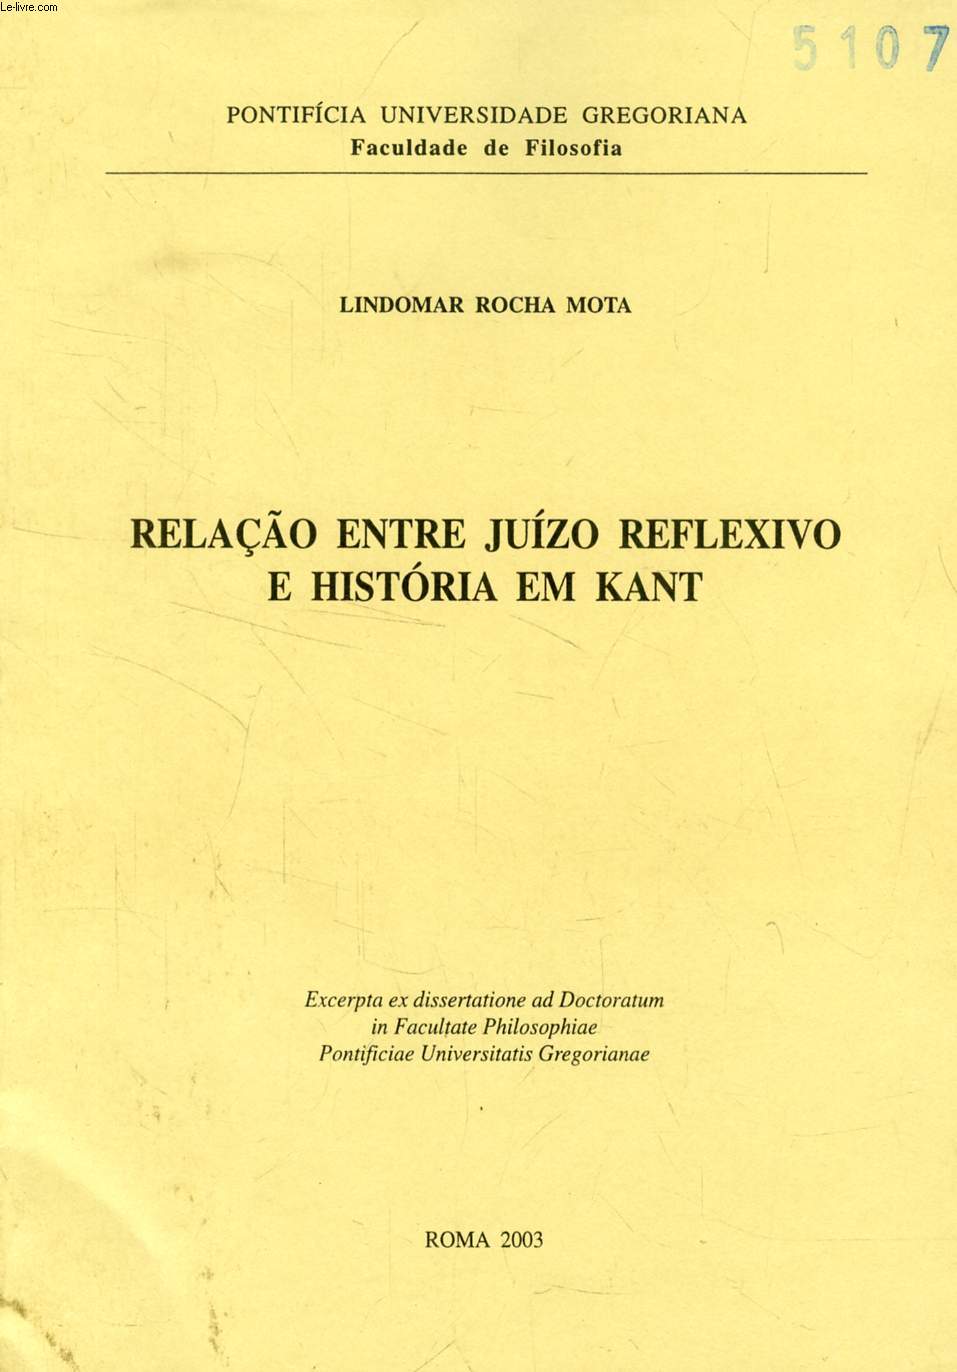 RELAO ENTRE JUIZO REFLEXIVO E HISTORIA EM KANT (EXCERPTA EX DISSERTATIONE)